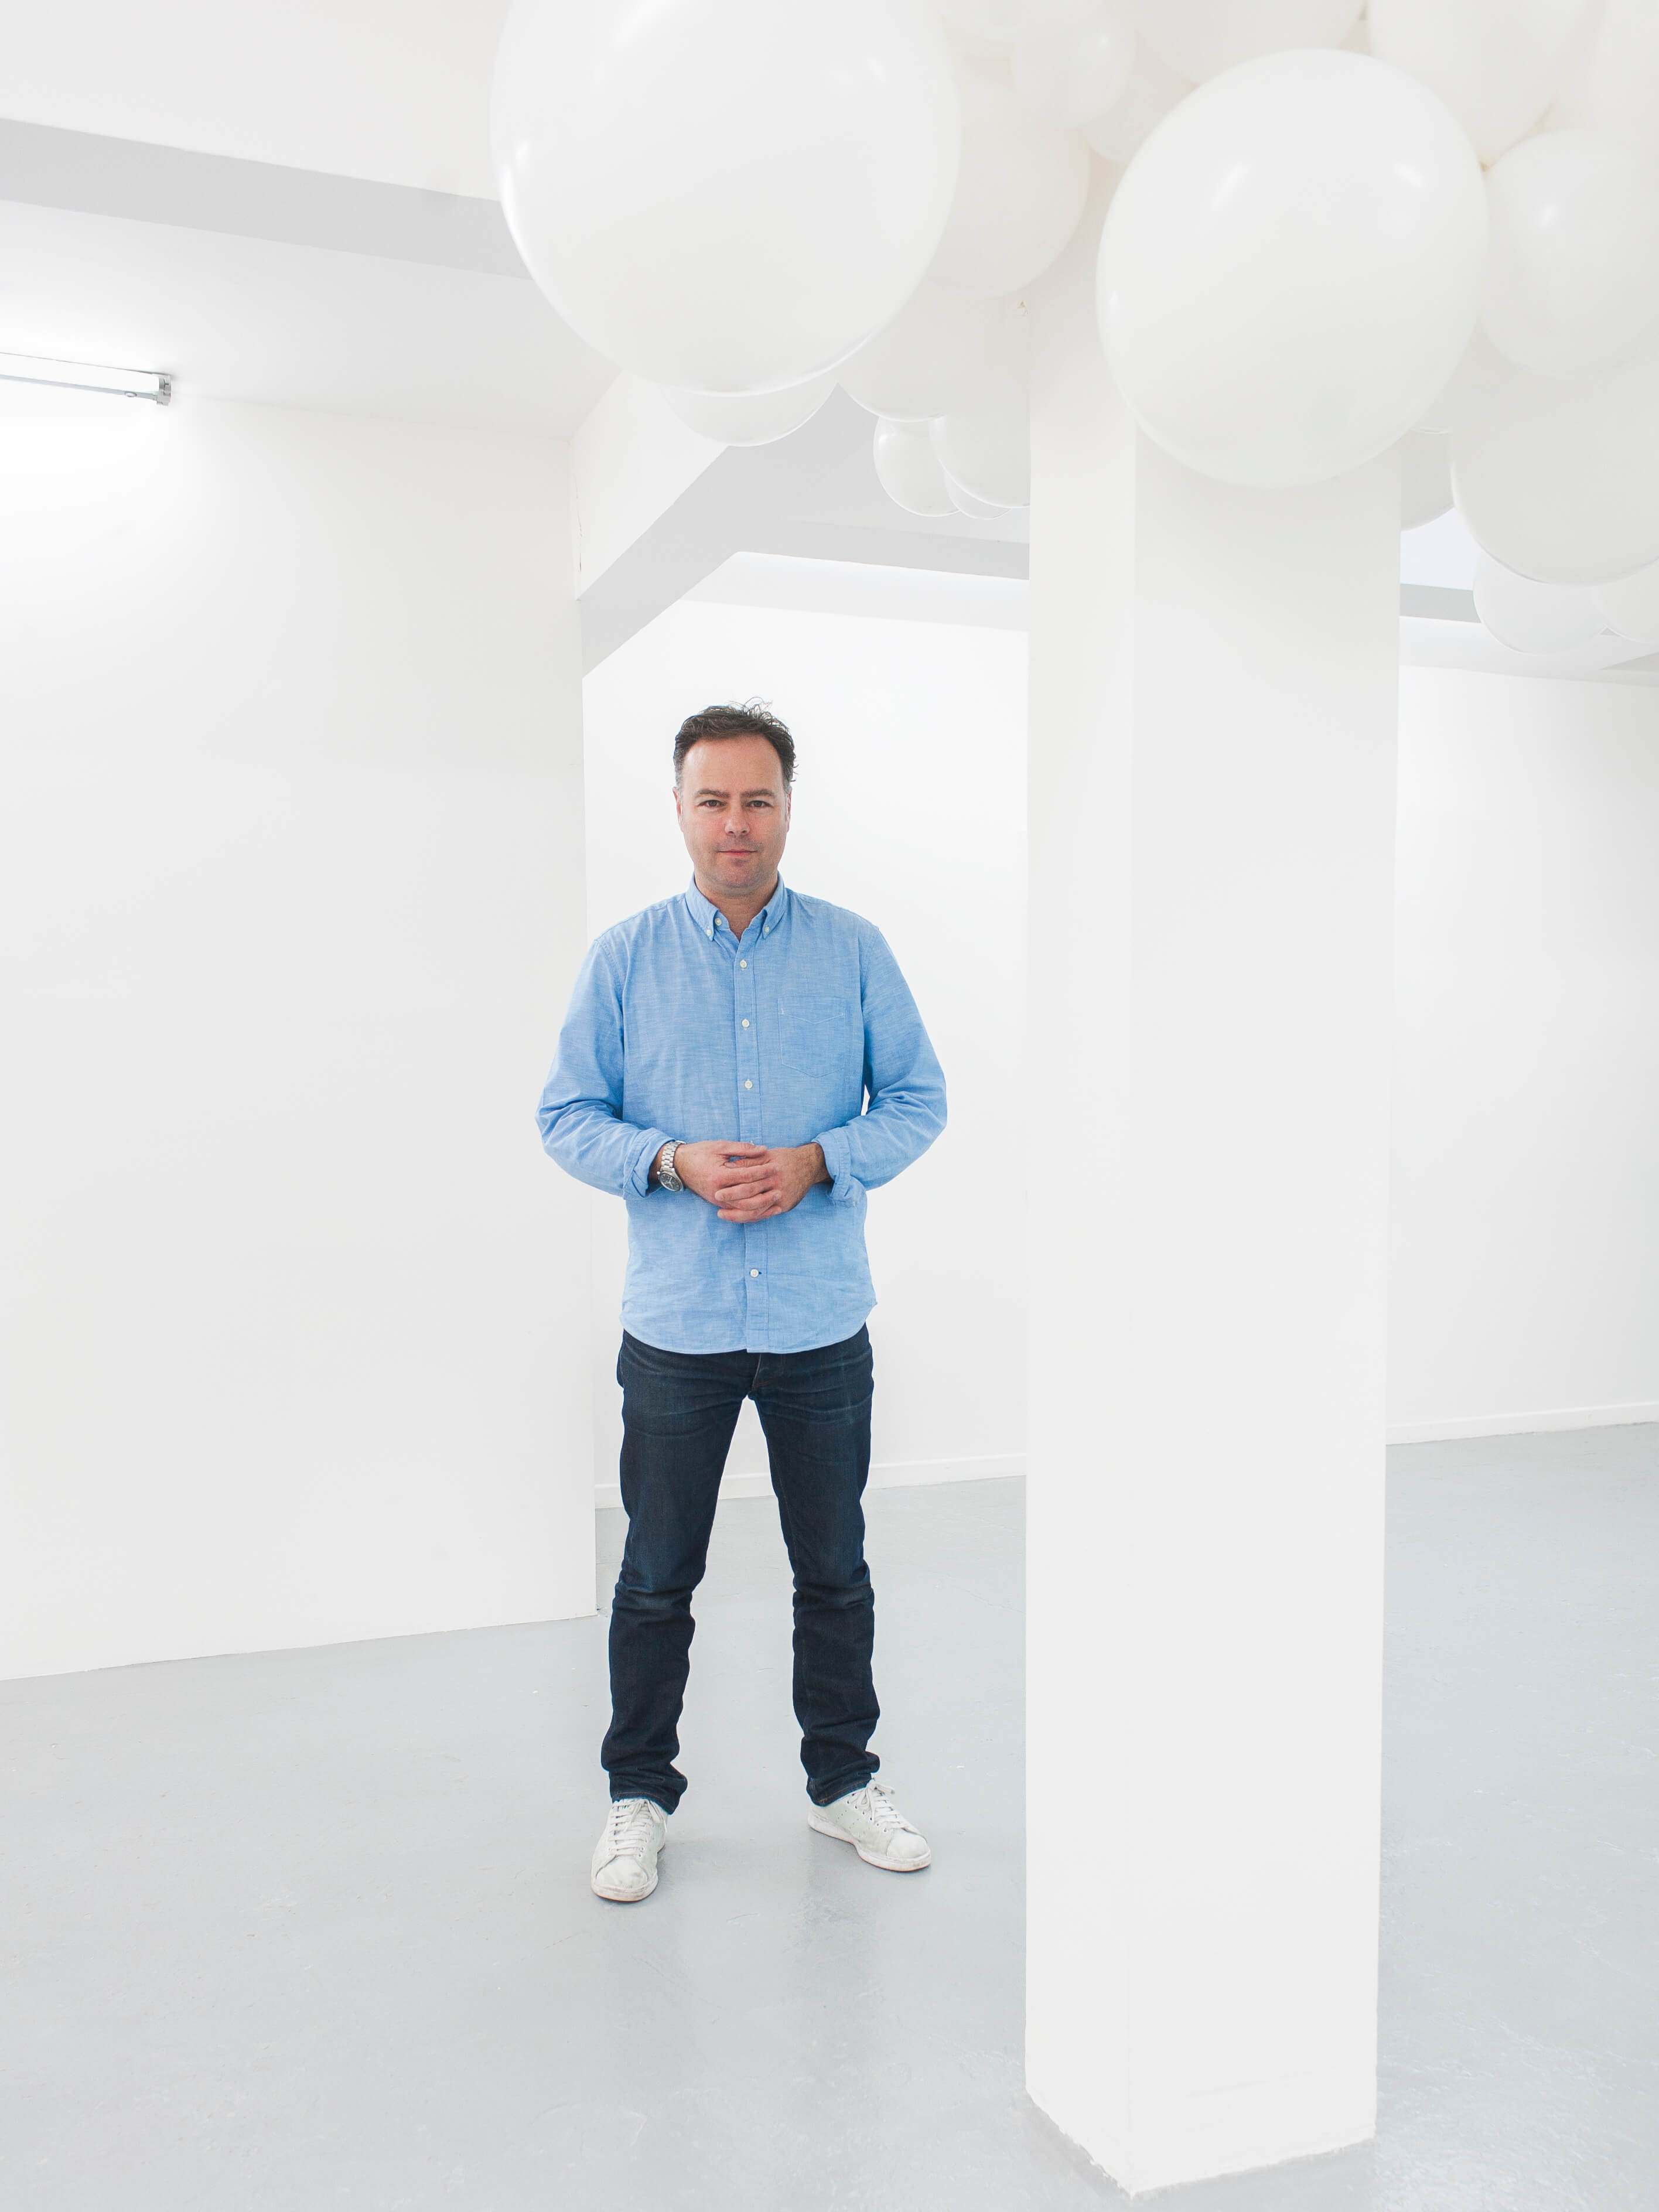 El artista Charles Petillon es reconocido por su arte con globos. Su instalación con telas Sunbrella fue presentada en la exhibición SuperDesign en Milán 2017.